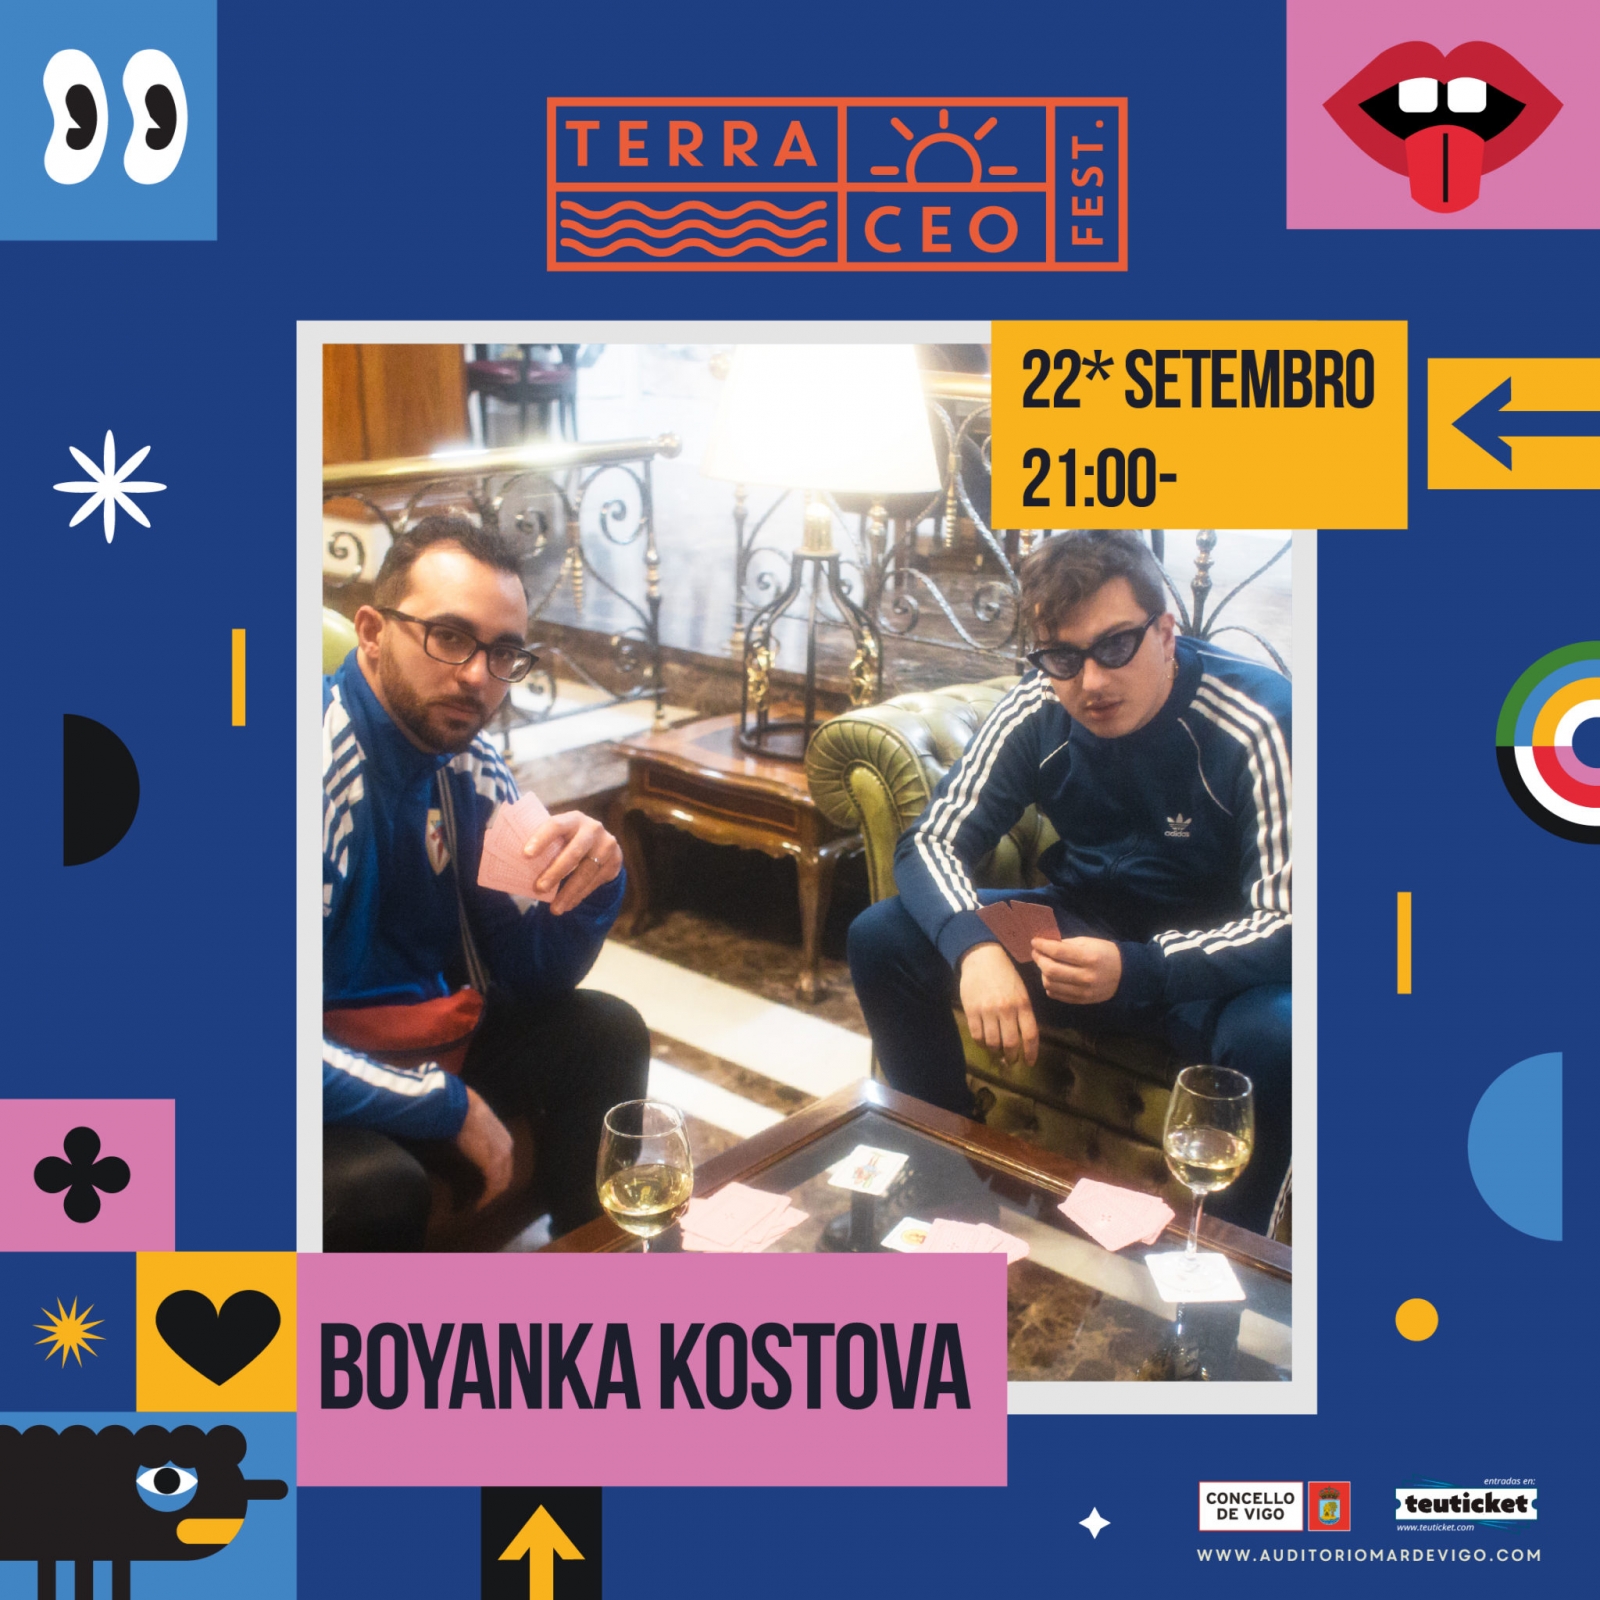 Terraceo Fest: Boyanka Kostova